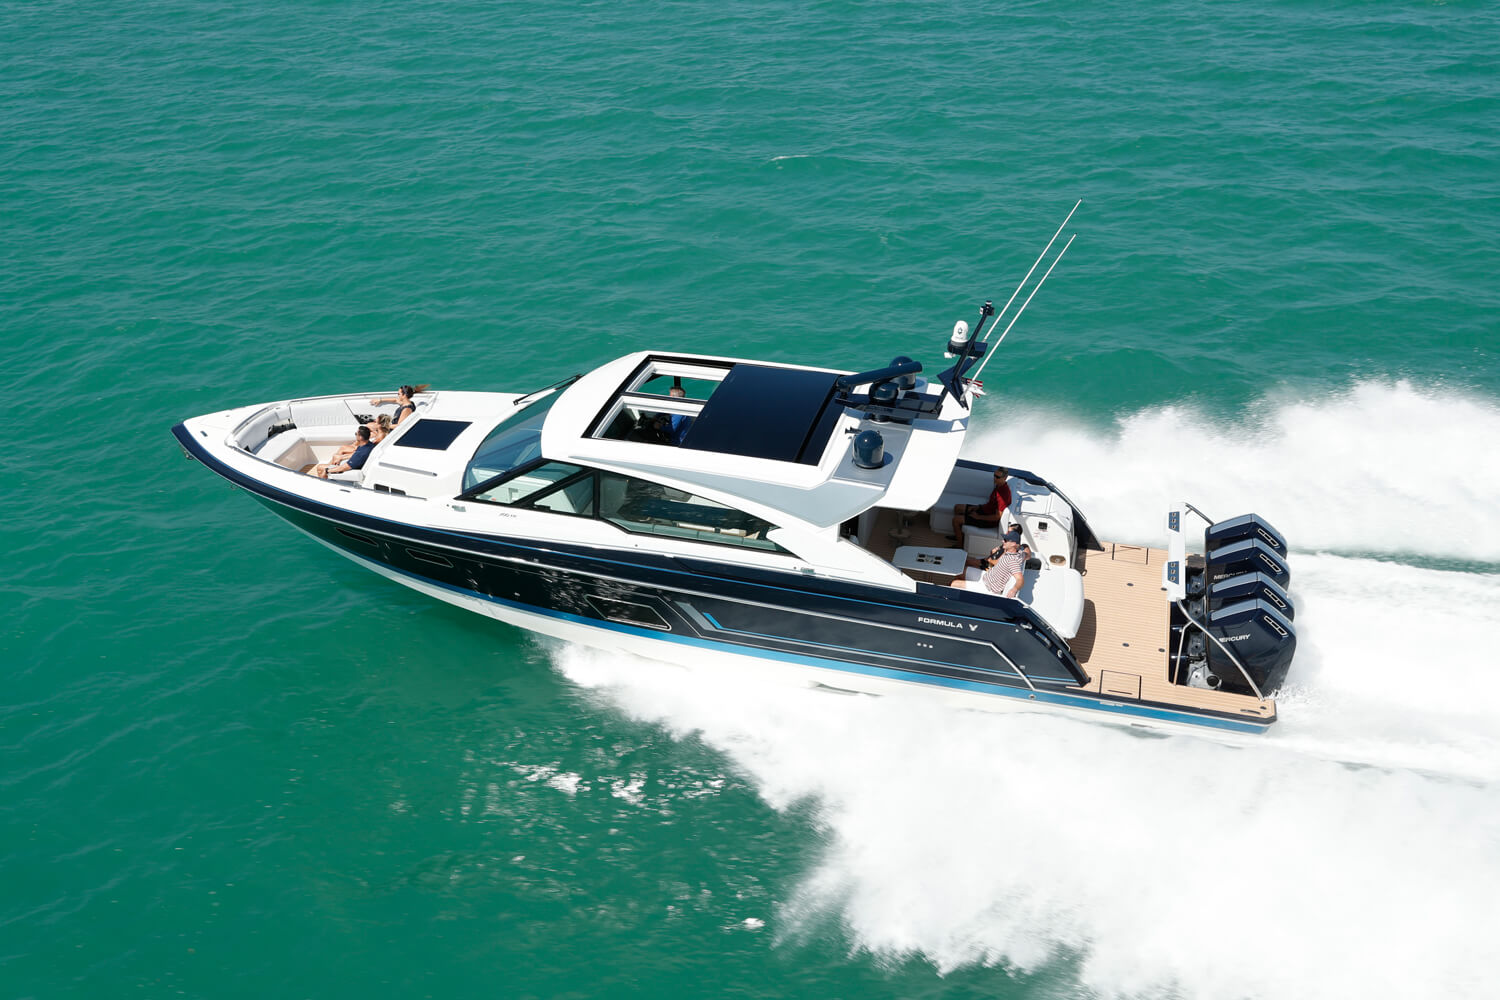 50 ft luxury yacht